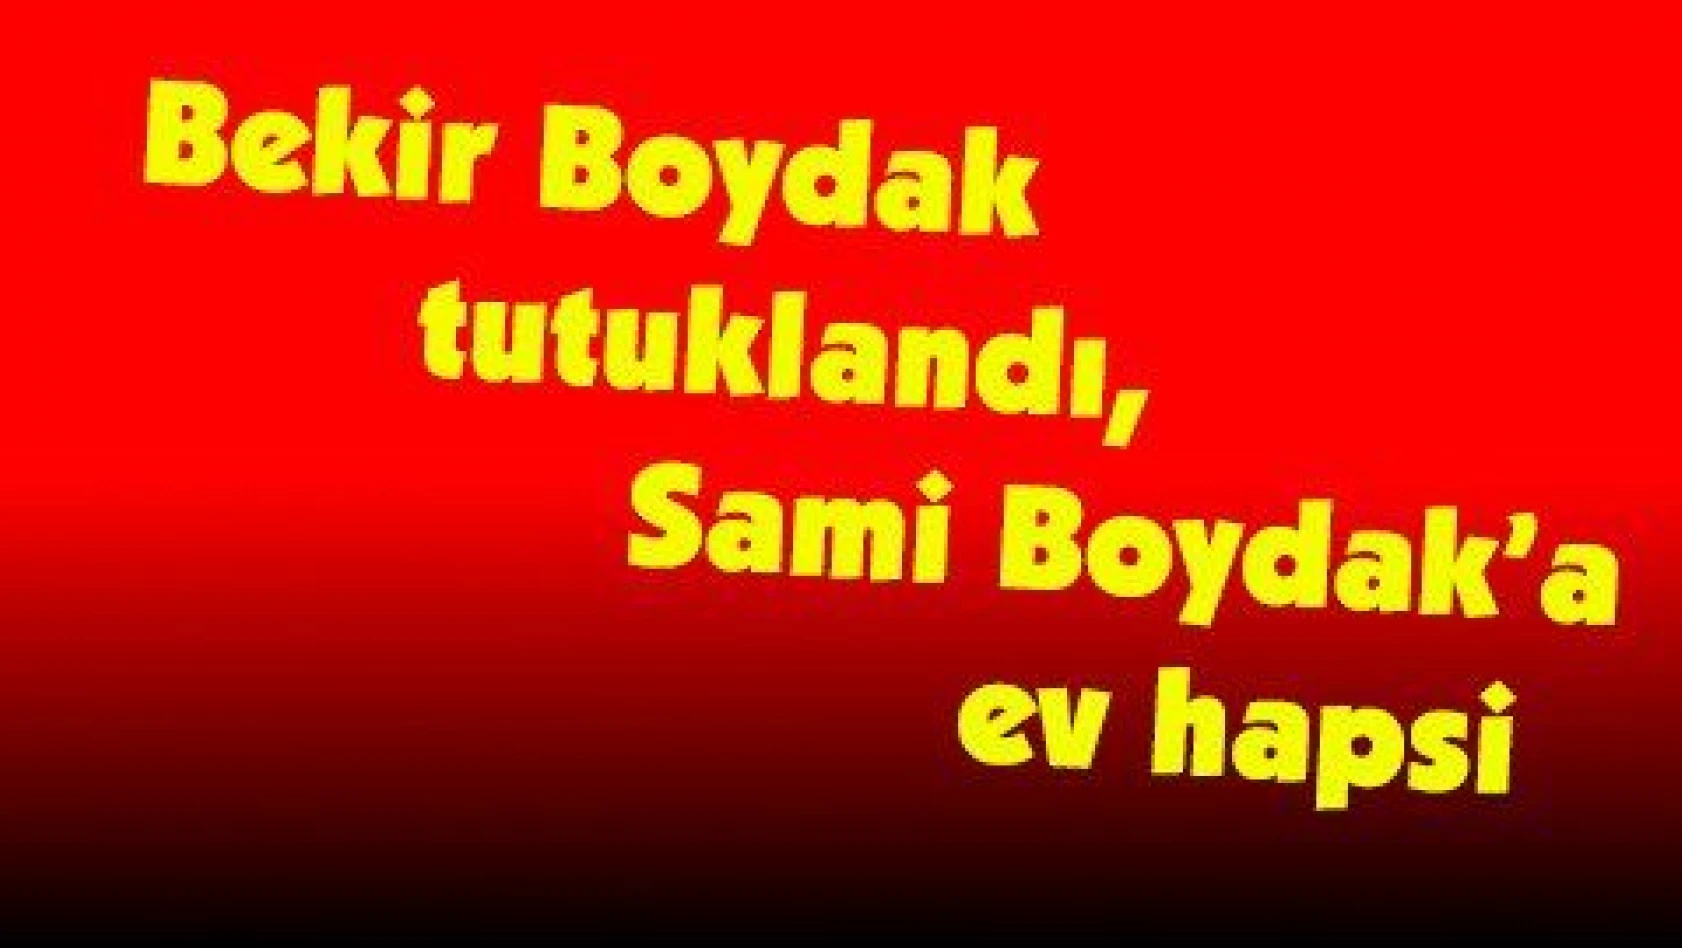 Bekir Boydak tutuklandı, Sami Boydak'a ev hapsi